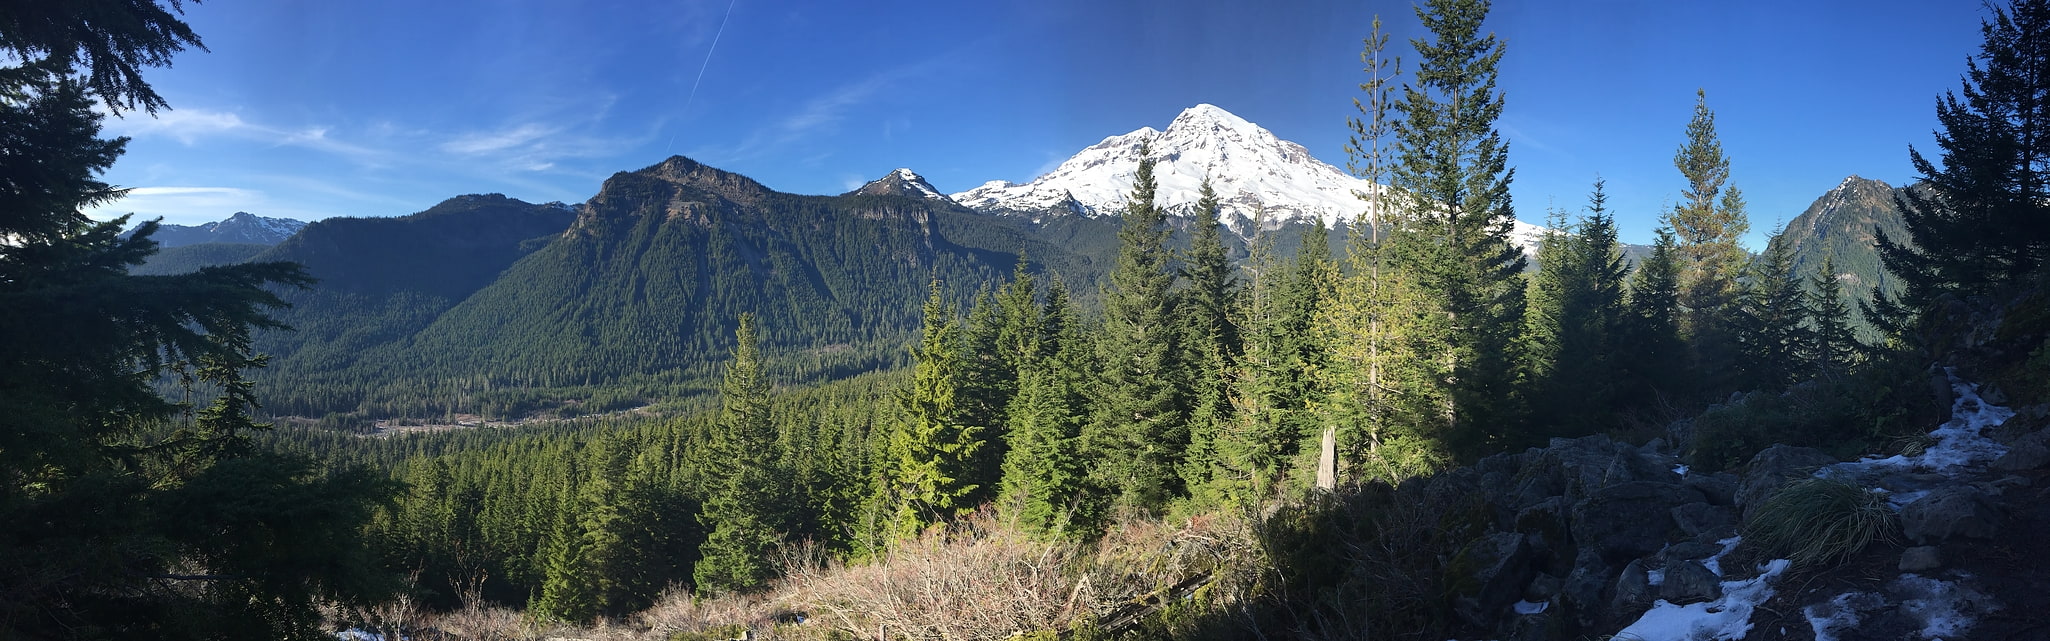 Park Narodowy Mount Rainier, Stany Zjednoczone